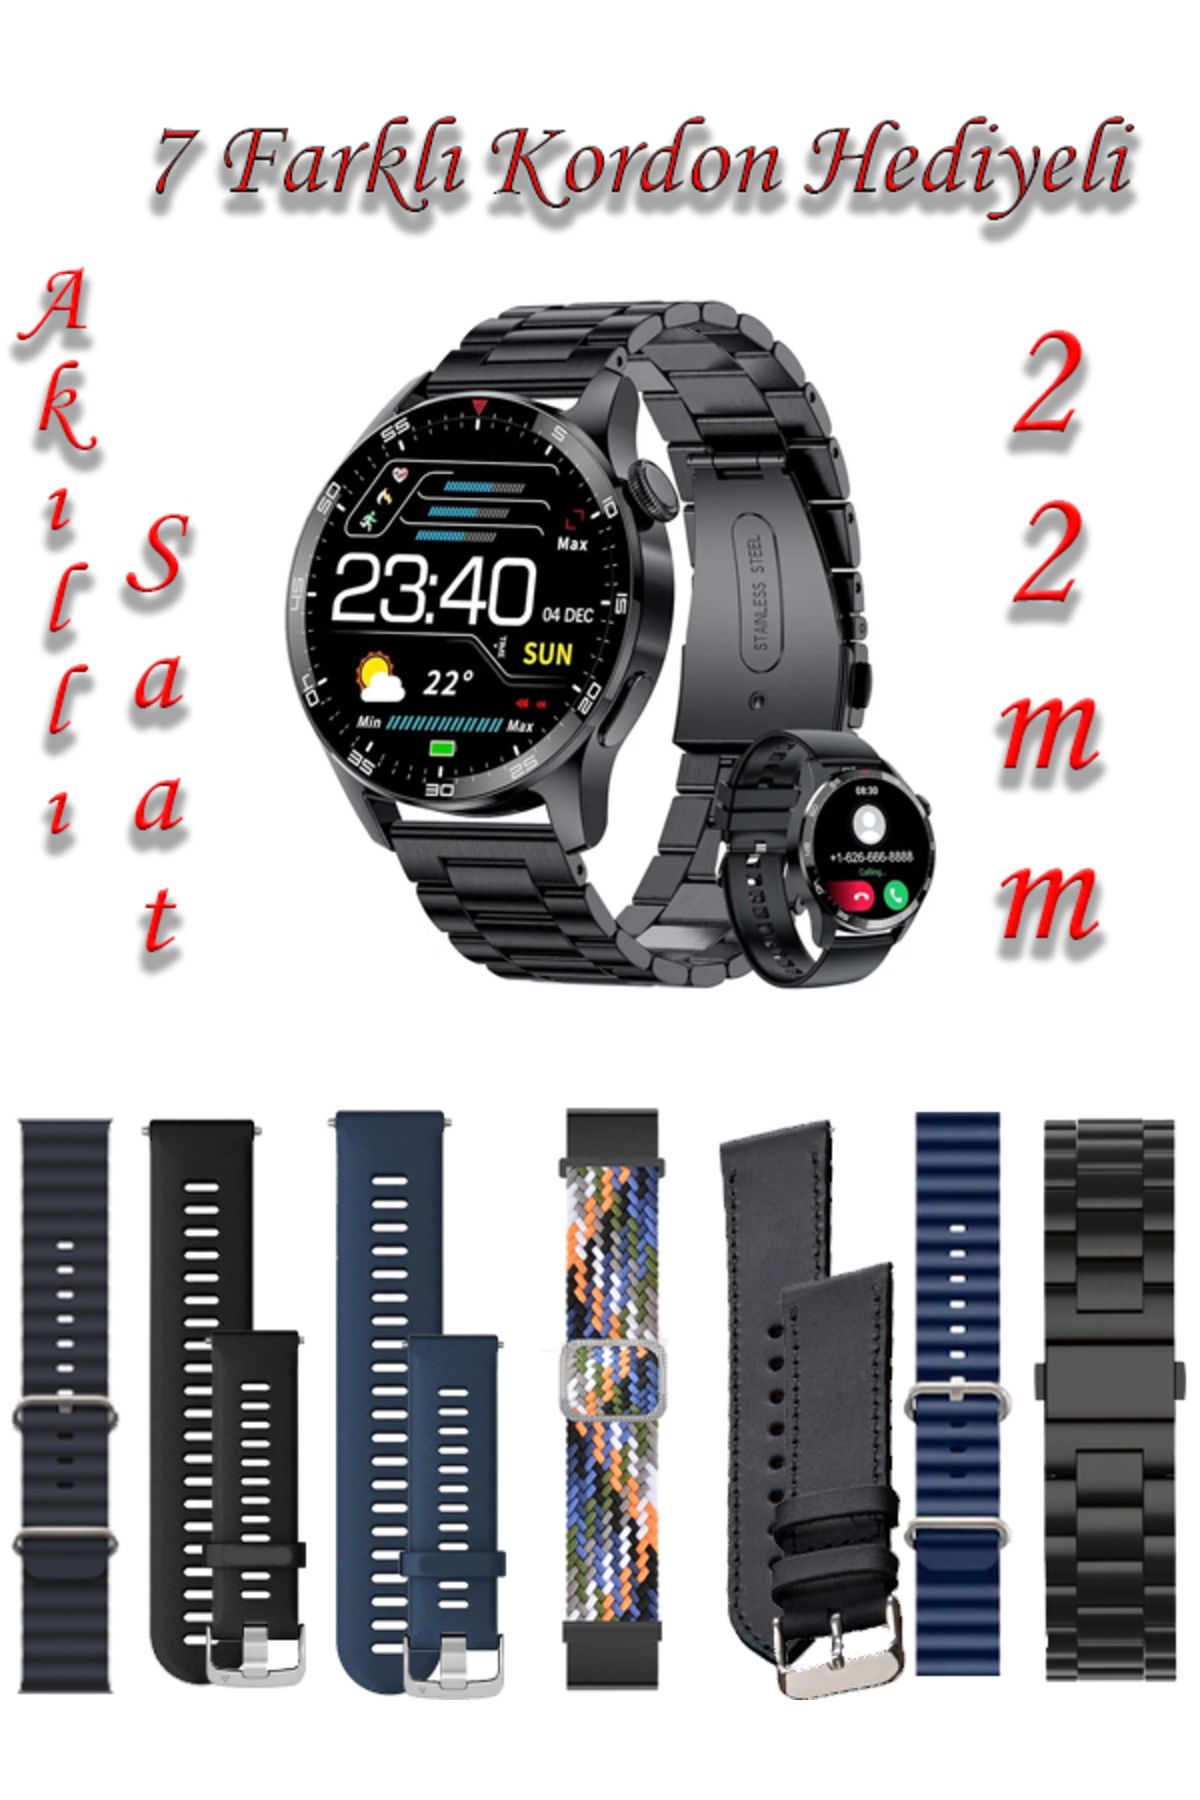 TECHNOMEN Akıllı Saat Watch 4 Suit 22 mm Geniş Ekran 7 Kordon Hediyeli Akıllı Saat